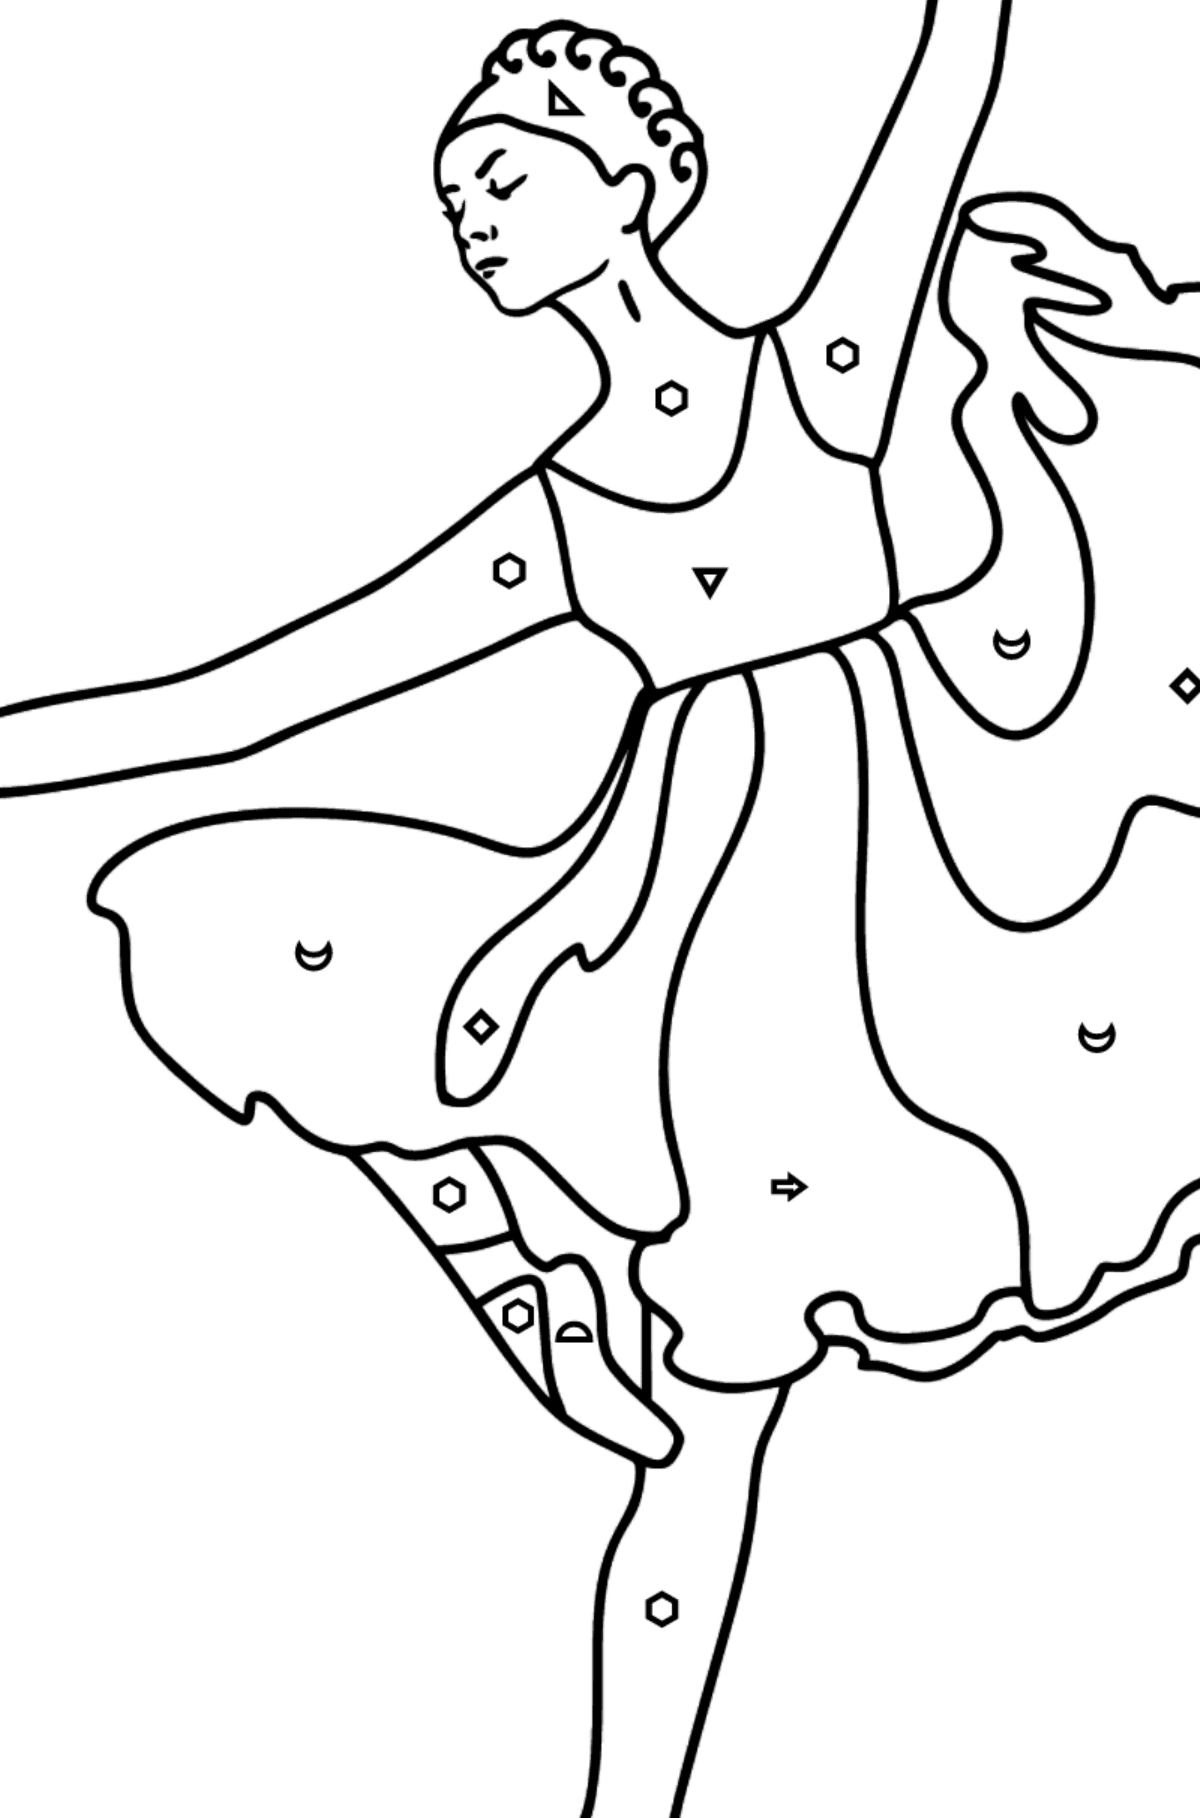 Dibujo para colorear - Bailarina con vestido lila - Colorear por Símbolos para Niños